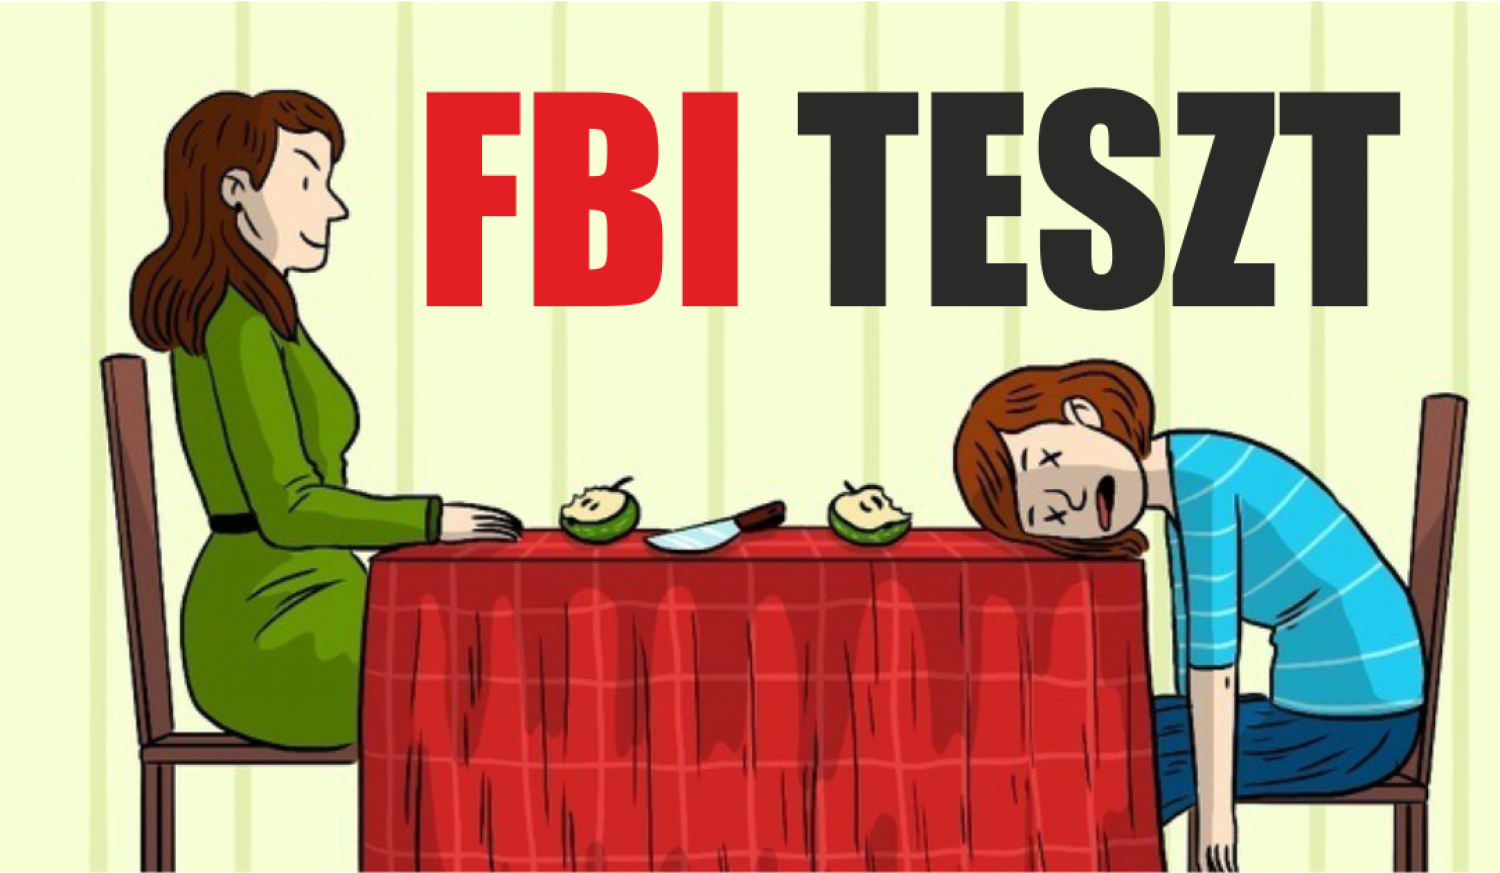 Átmennél az FBI ügynök teszten?